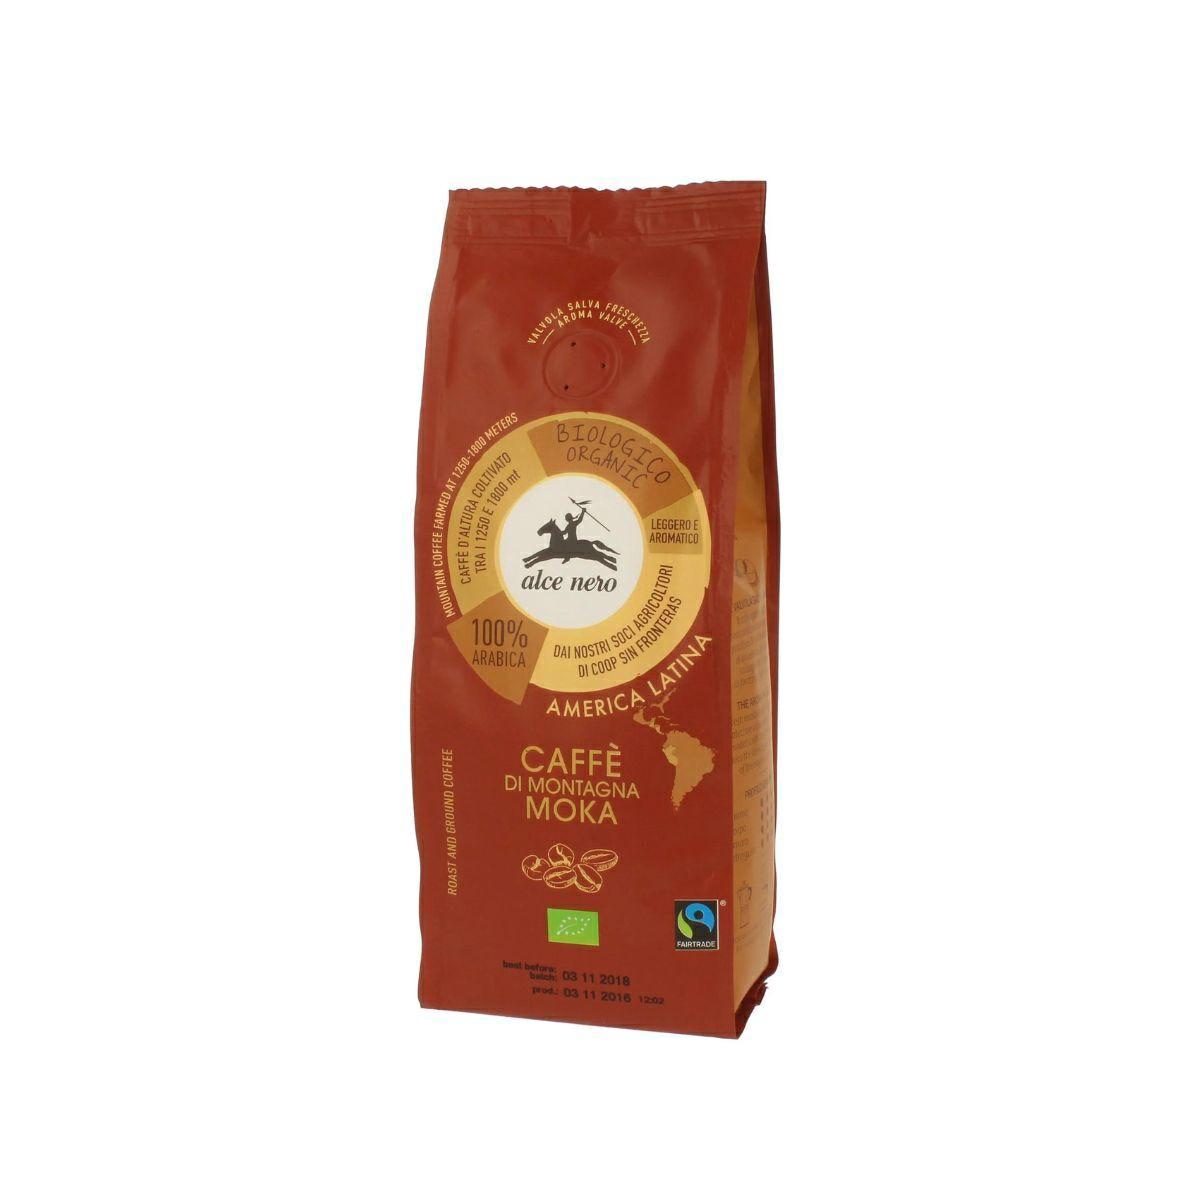 CAFFE 100% ARABICA PER MOKA 250 G (ALCE NERO FAIRTRADE)